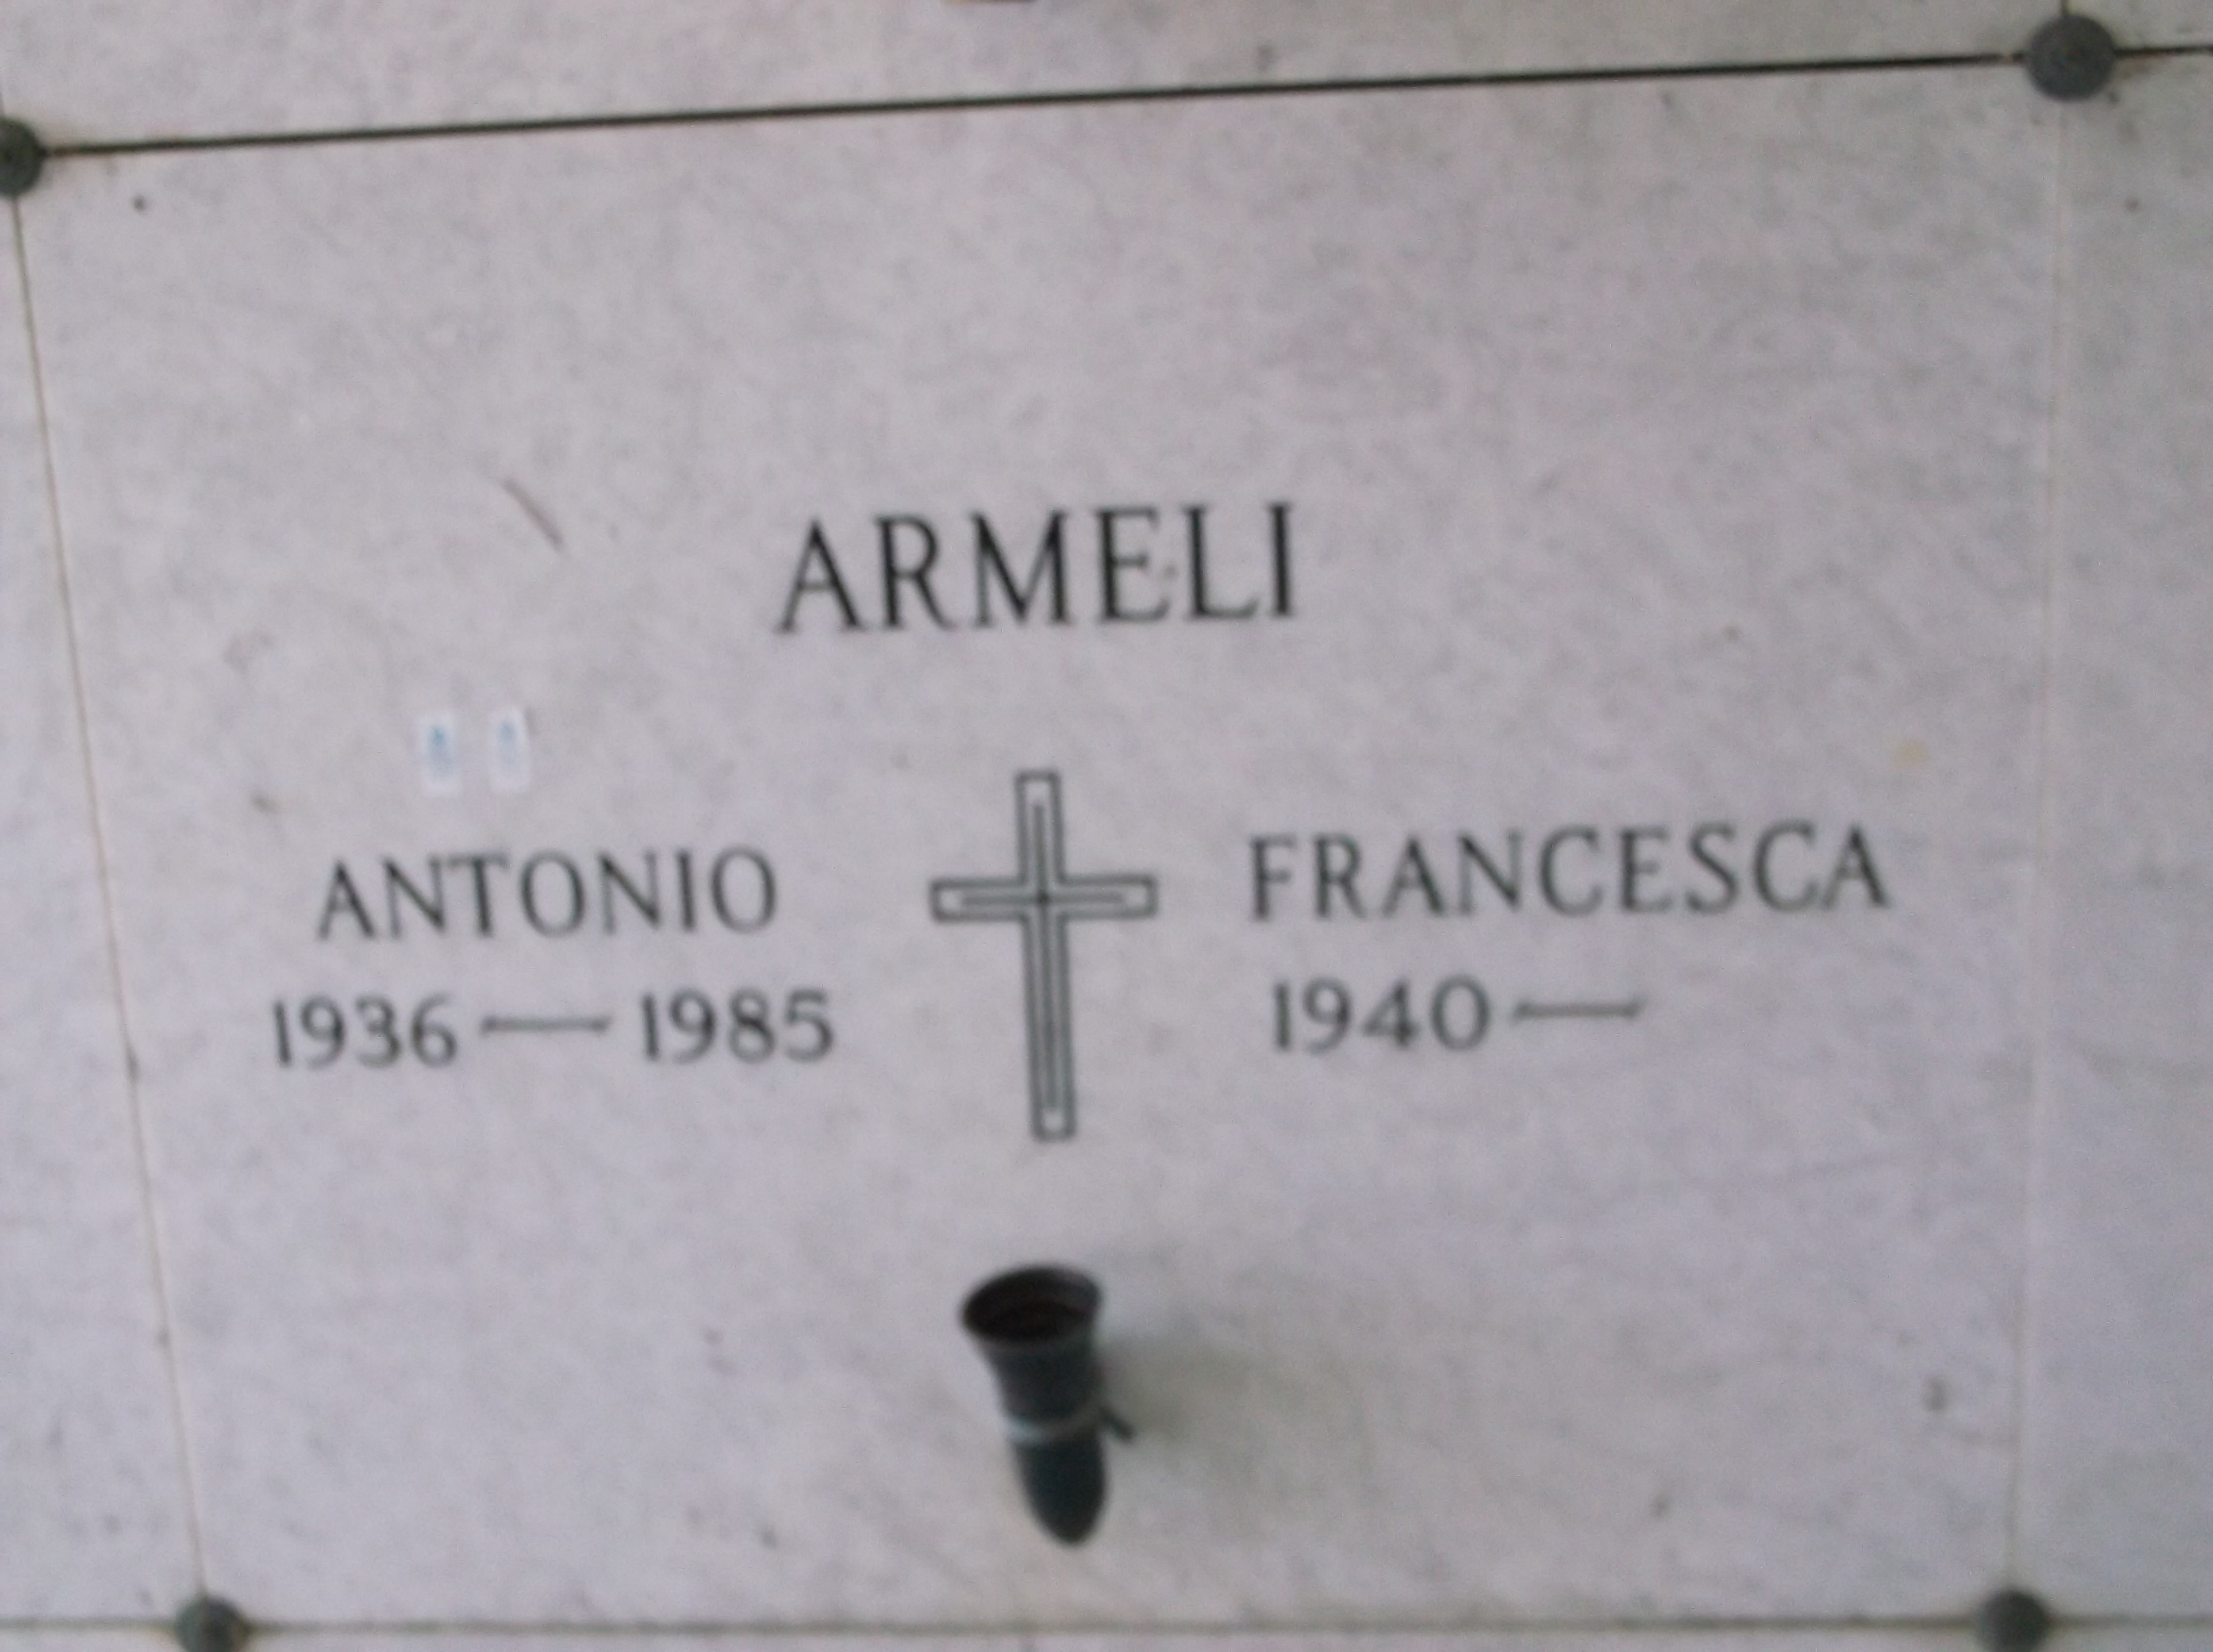 Antonio Armeli